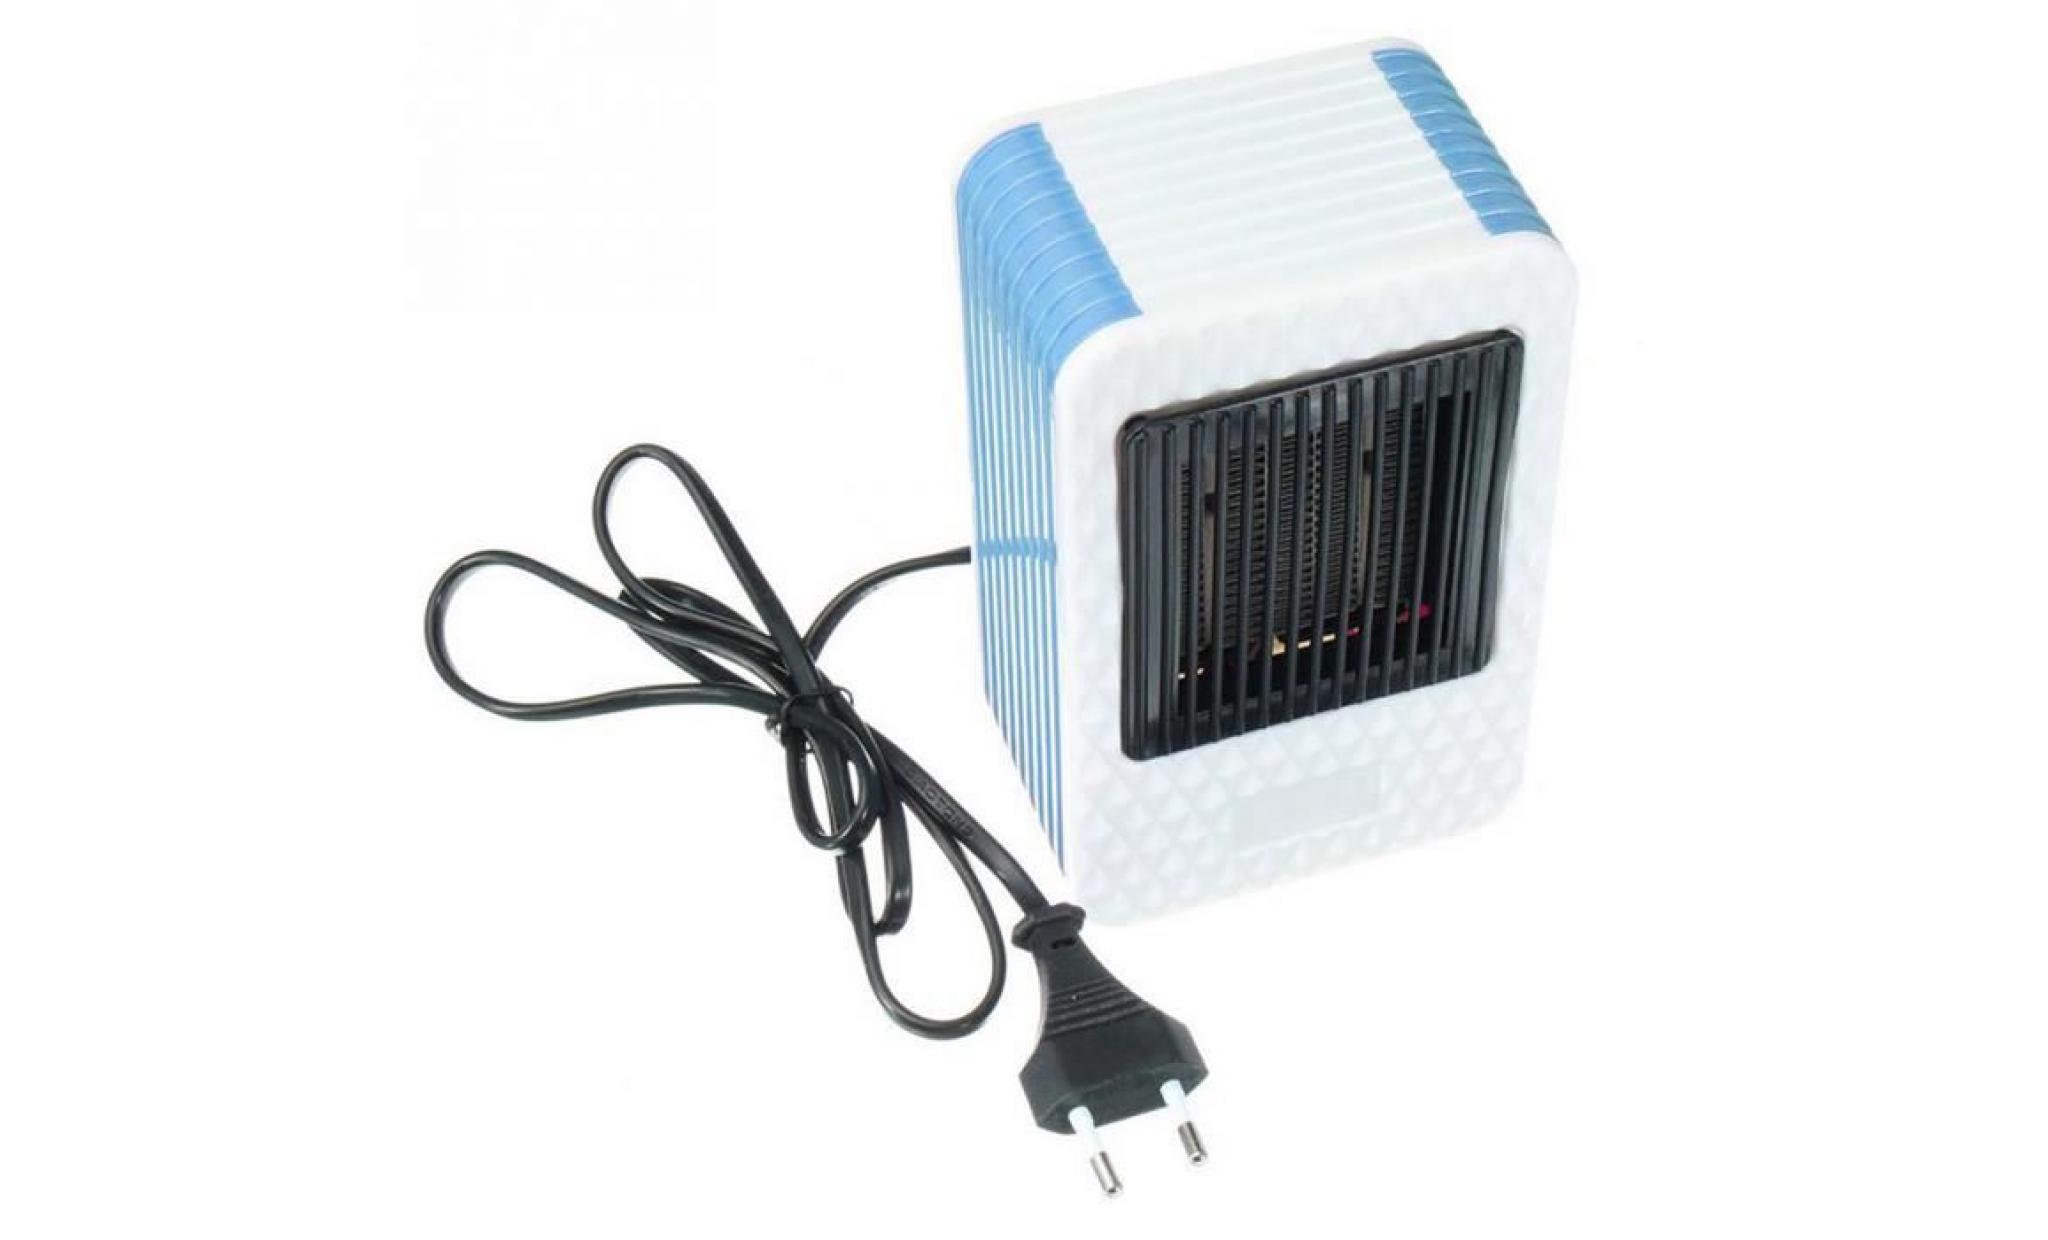 neufu 500w mini chauffage bureau électriques portables pour hiver chaud appareil réchauffeur haute efficacité eu plug pas cher